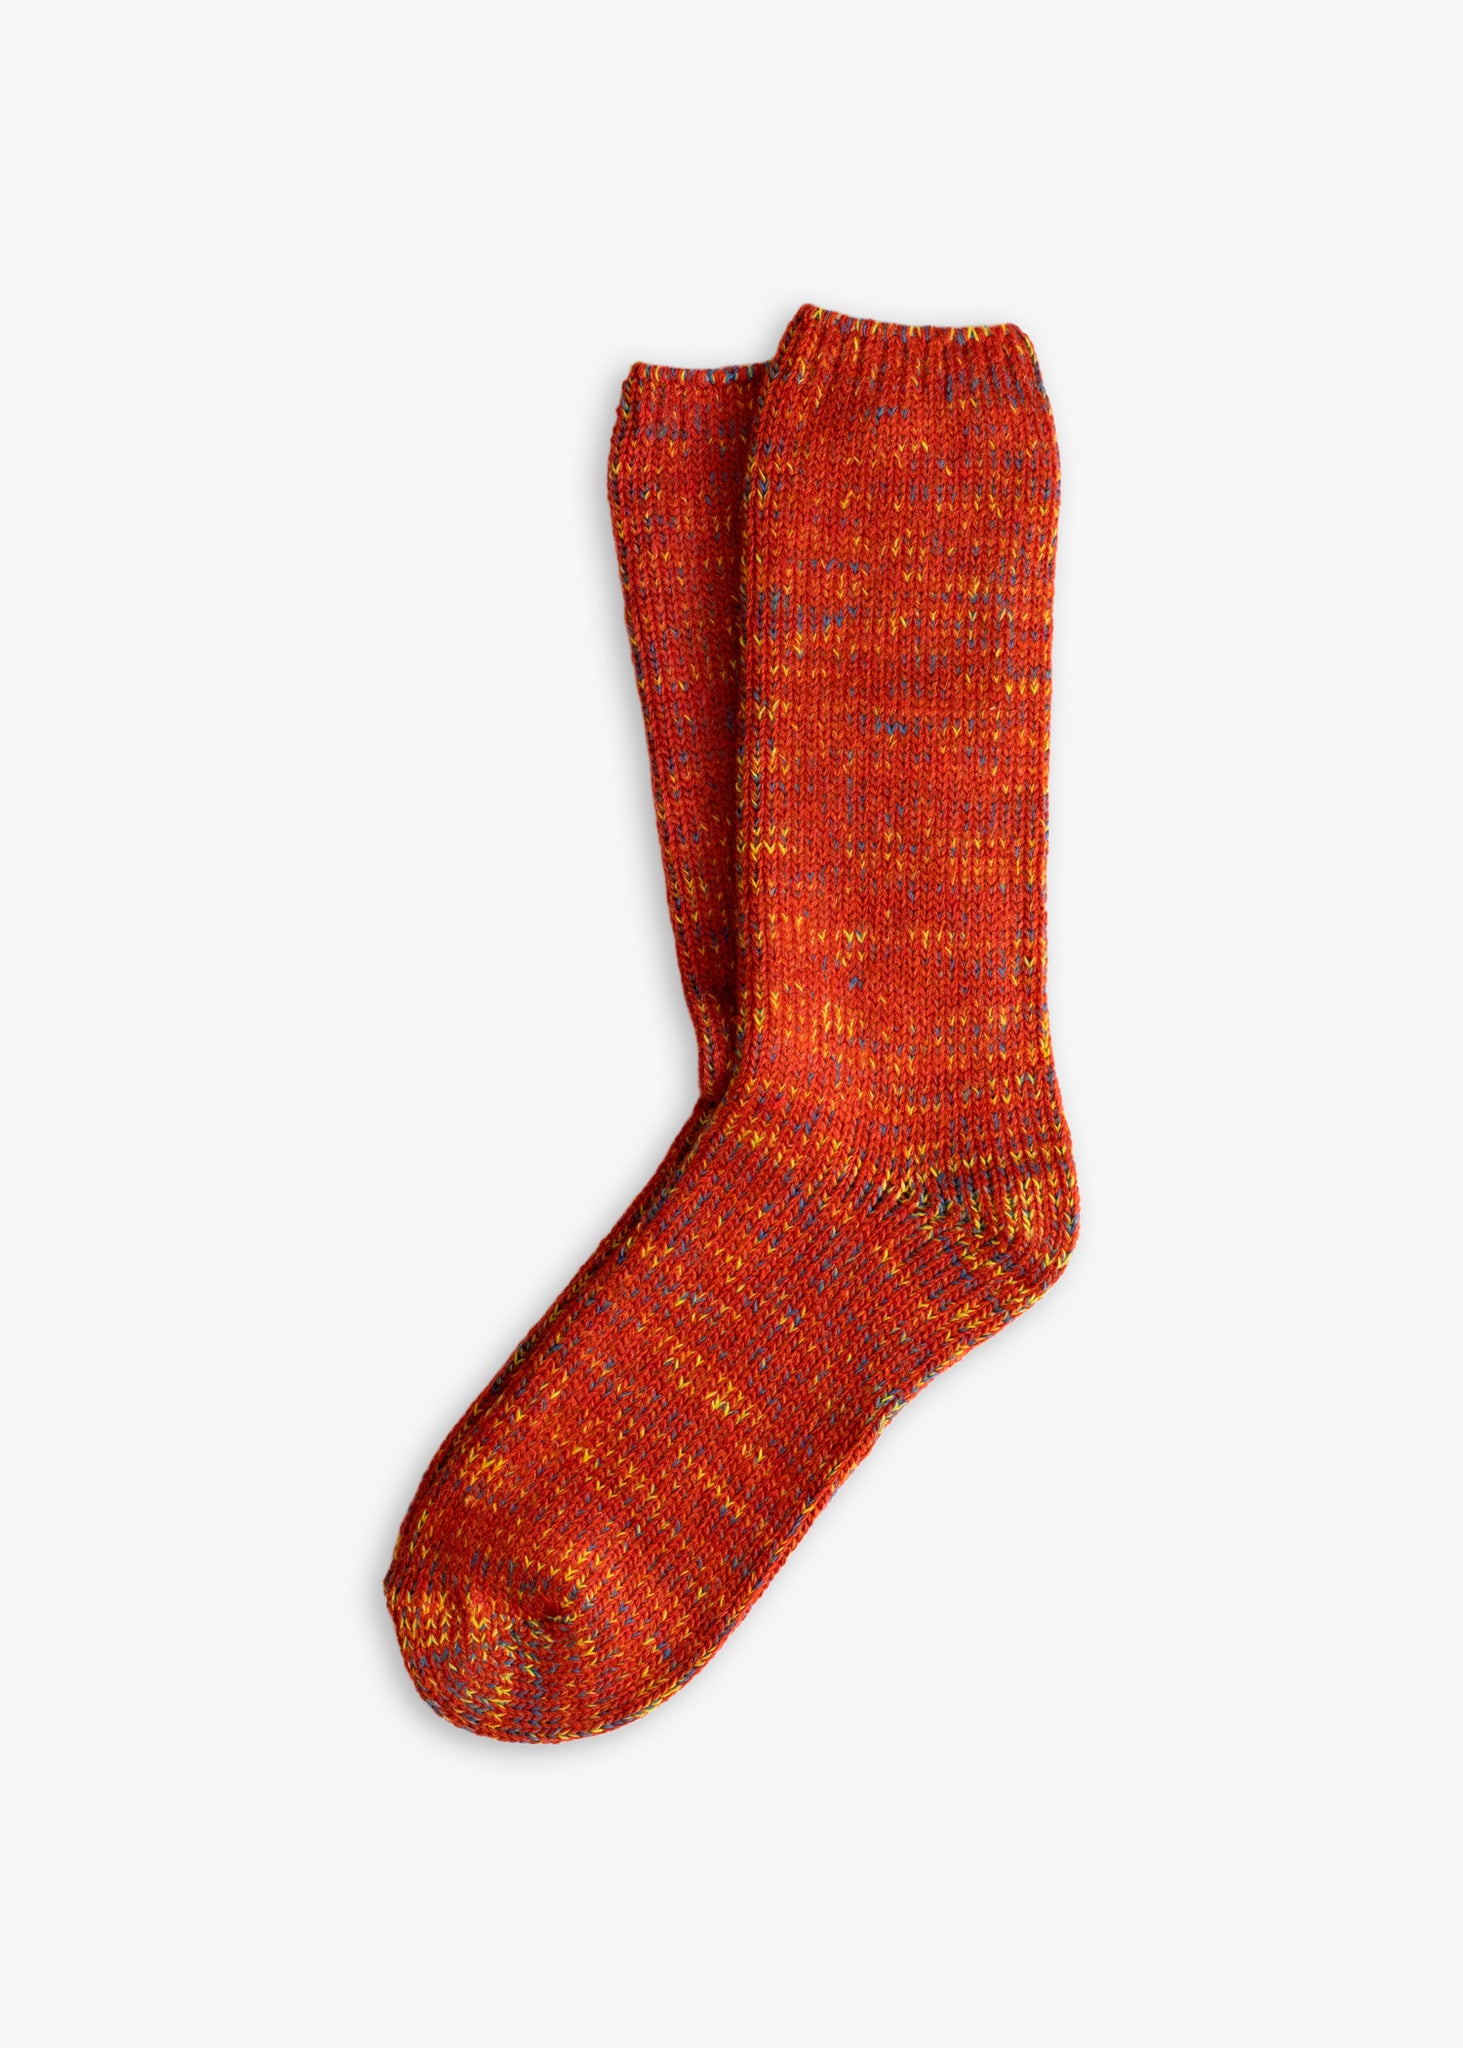 Thunders Love Wool Recycled Vintage Orange Socks